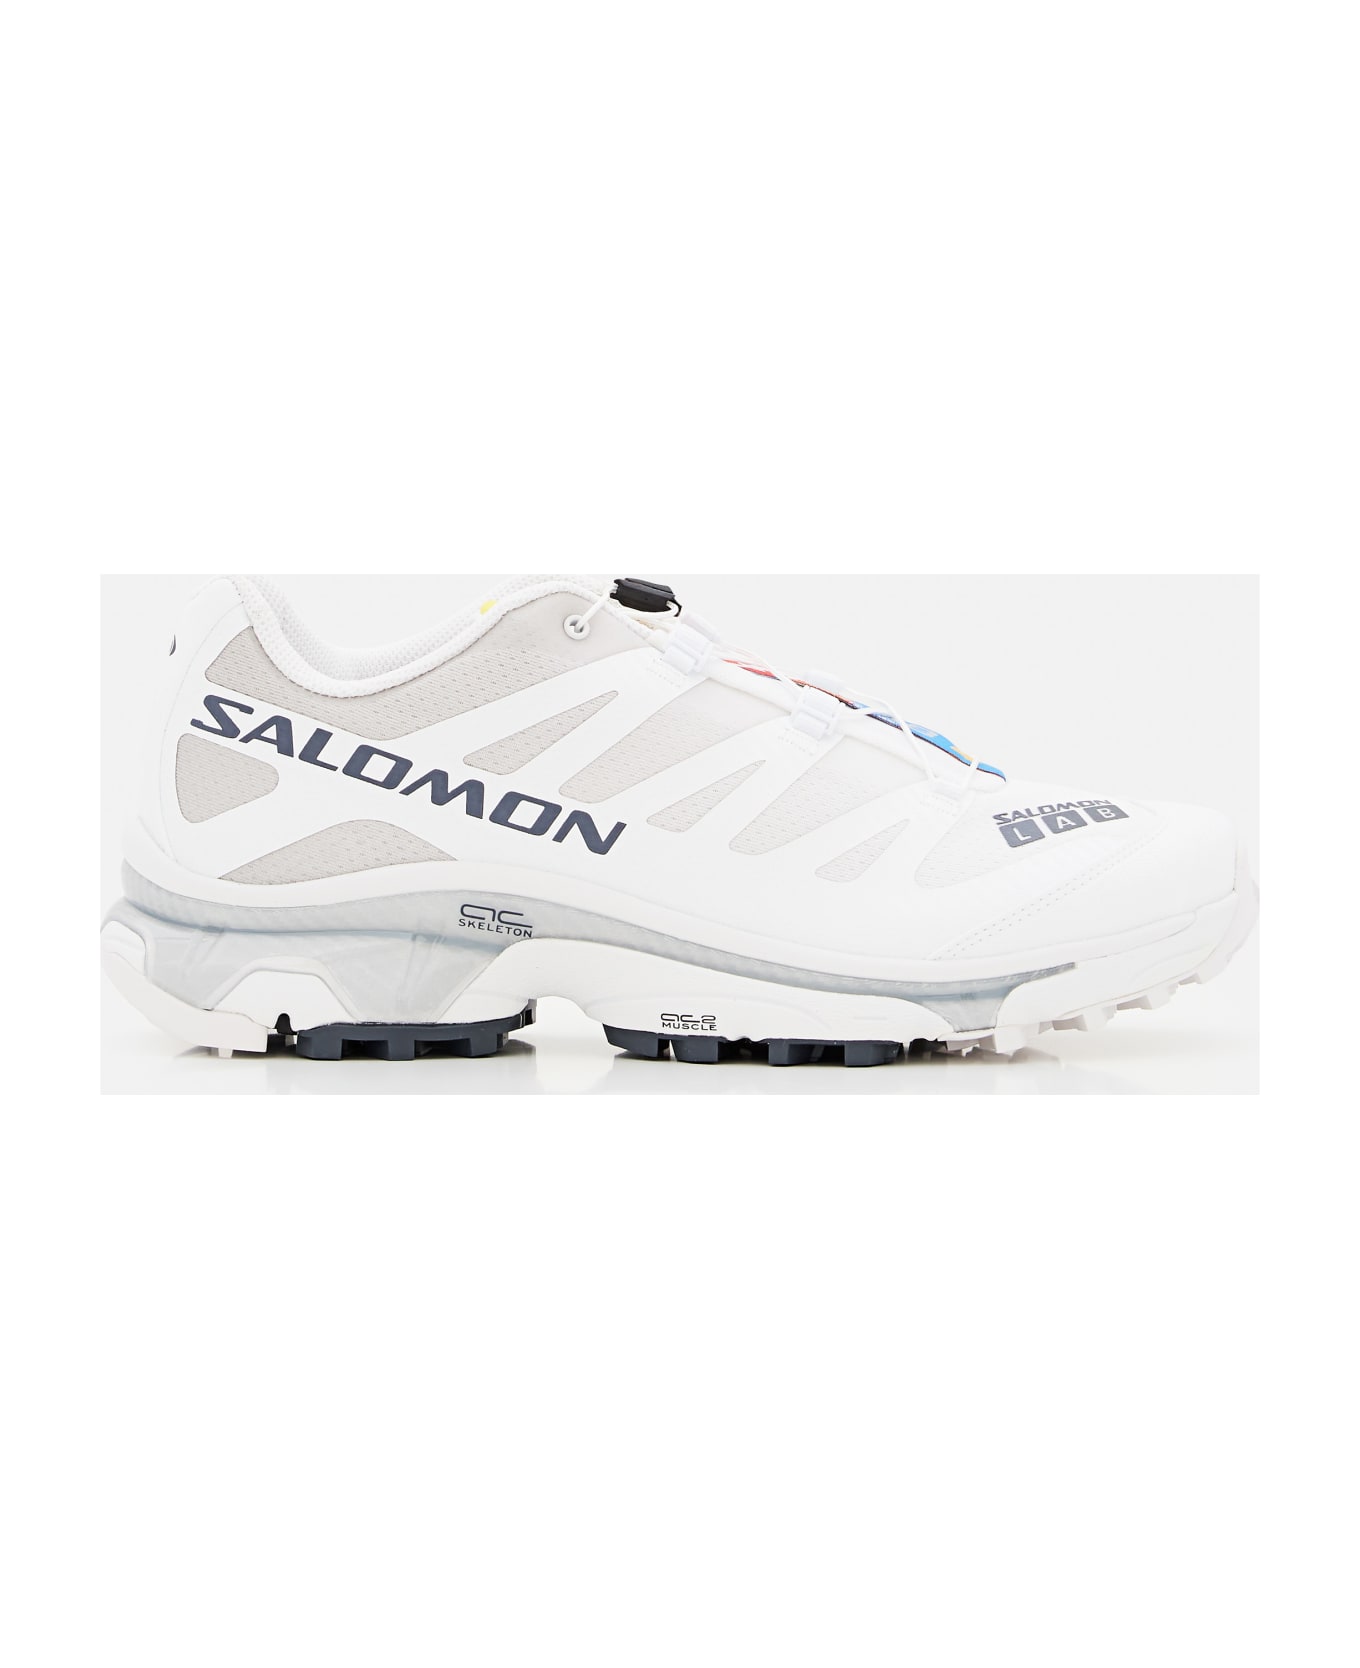 Salomon Low Top Xt-4 Og Sneakers - White